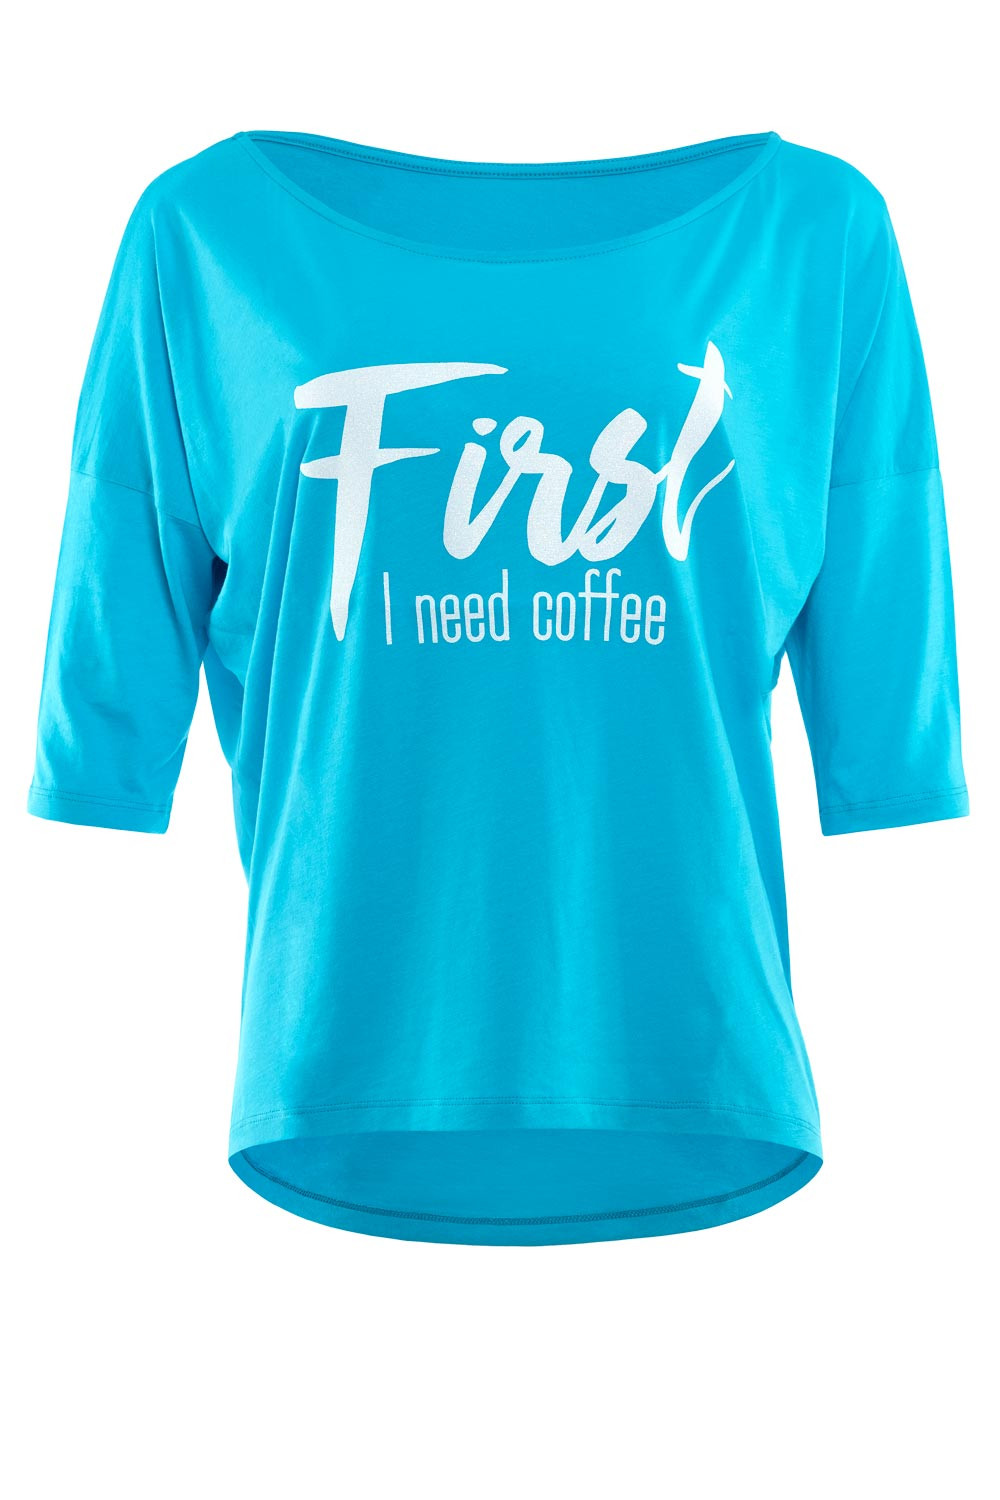 Ultra leichtes Modal-3/4-Arm Shirt MCS001 mit weißem Glitzer-Aufdruck  „First I need coffee”, Winshape Dance Style